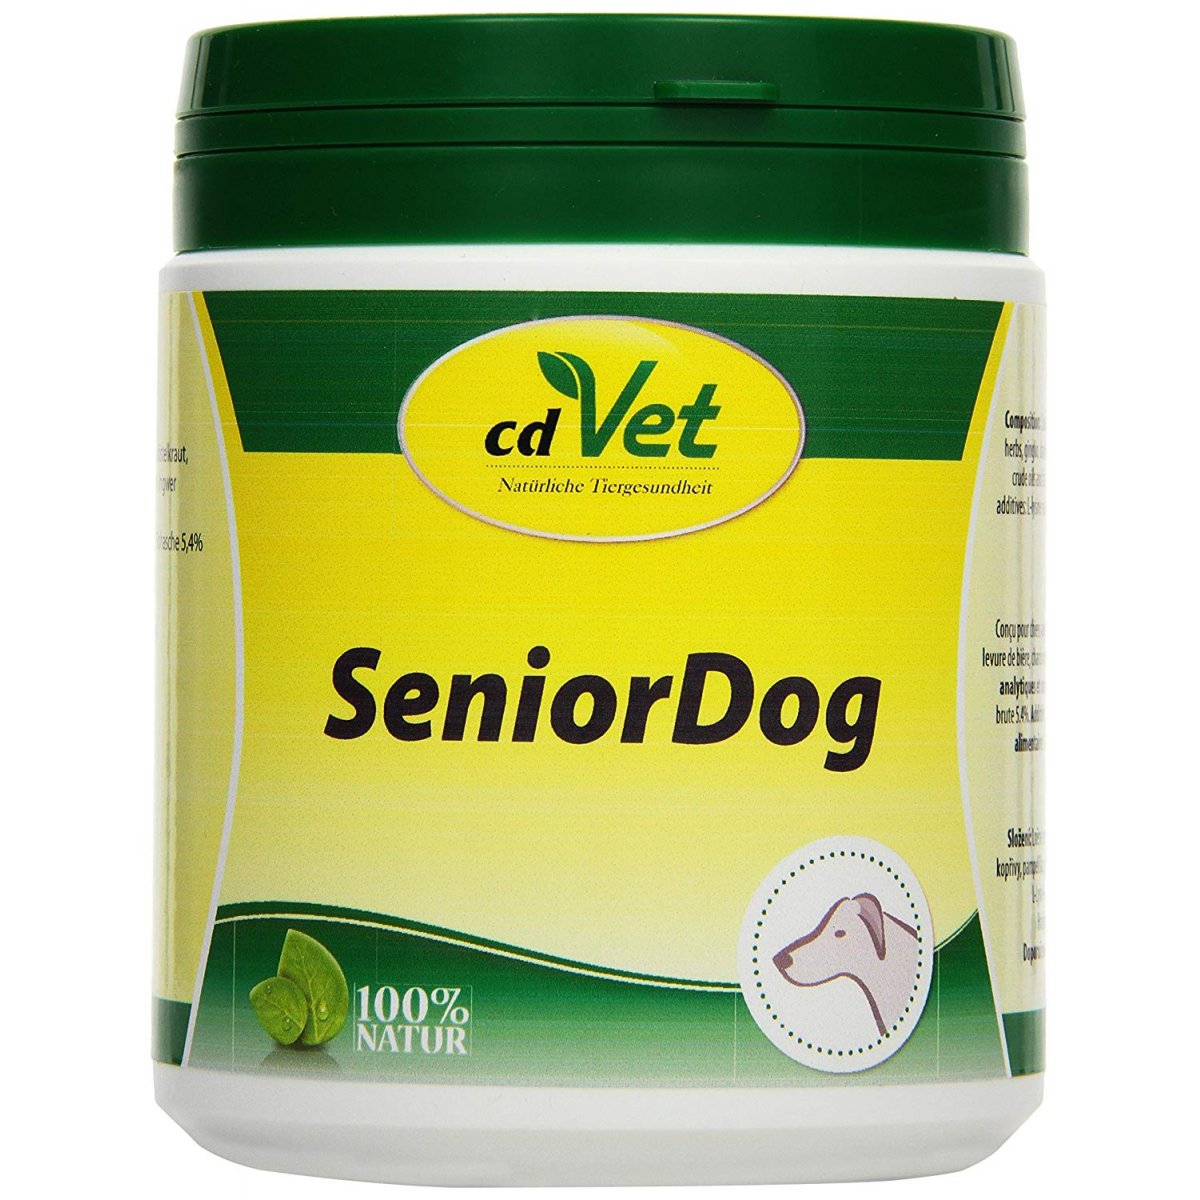 cdVet SeniorDog natürlicher Futterzusatz für alternde Hunde und in